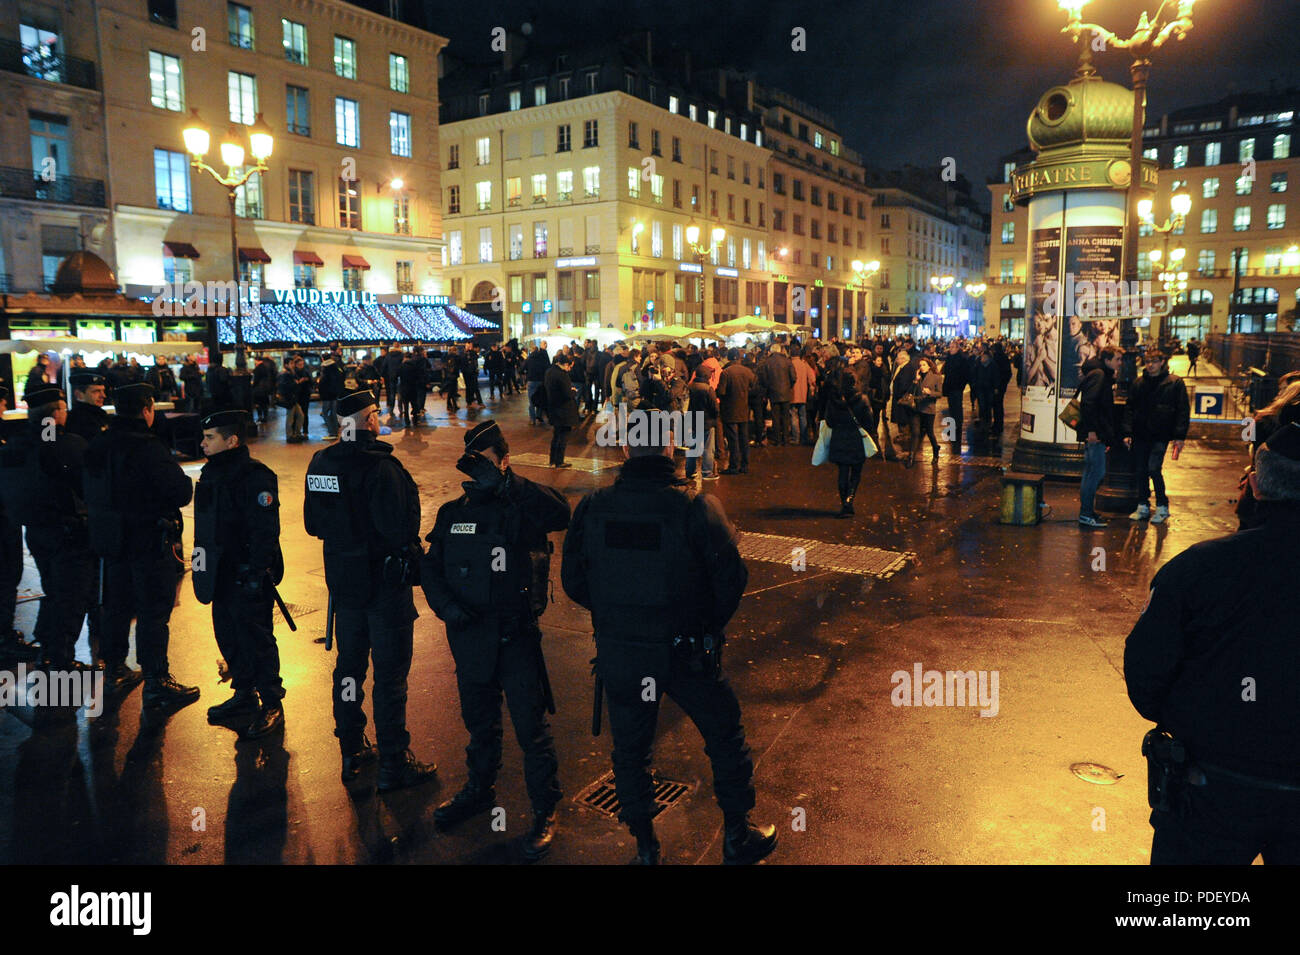 8 janvier 2015 - Paris, France : la police française a empêcher la Riposte Laique de droite "représailles" (laïque) groupe, connu pour son discours anti-Islam Fiery, de tenir un rassemblement pour protester contre les meurtres Charlie Hebdo. Le rassemblement avait été interdit sur le terrain d'être un risque pour l'ordre public. Riposte Laique a appelé à des manifestations de masse anti-Islam à Paris, semblable à l'Pegida circulation en Allemagne, quelques jours avant la fusillade mortelle sur Charlie Hebdo. Des militants de riposte Laique se rassemblent place de la Bourse lors d'une manifestation interdite, au lendemain de l'attentat contre Charlie H Banque D'Images